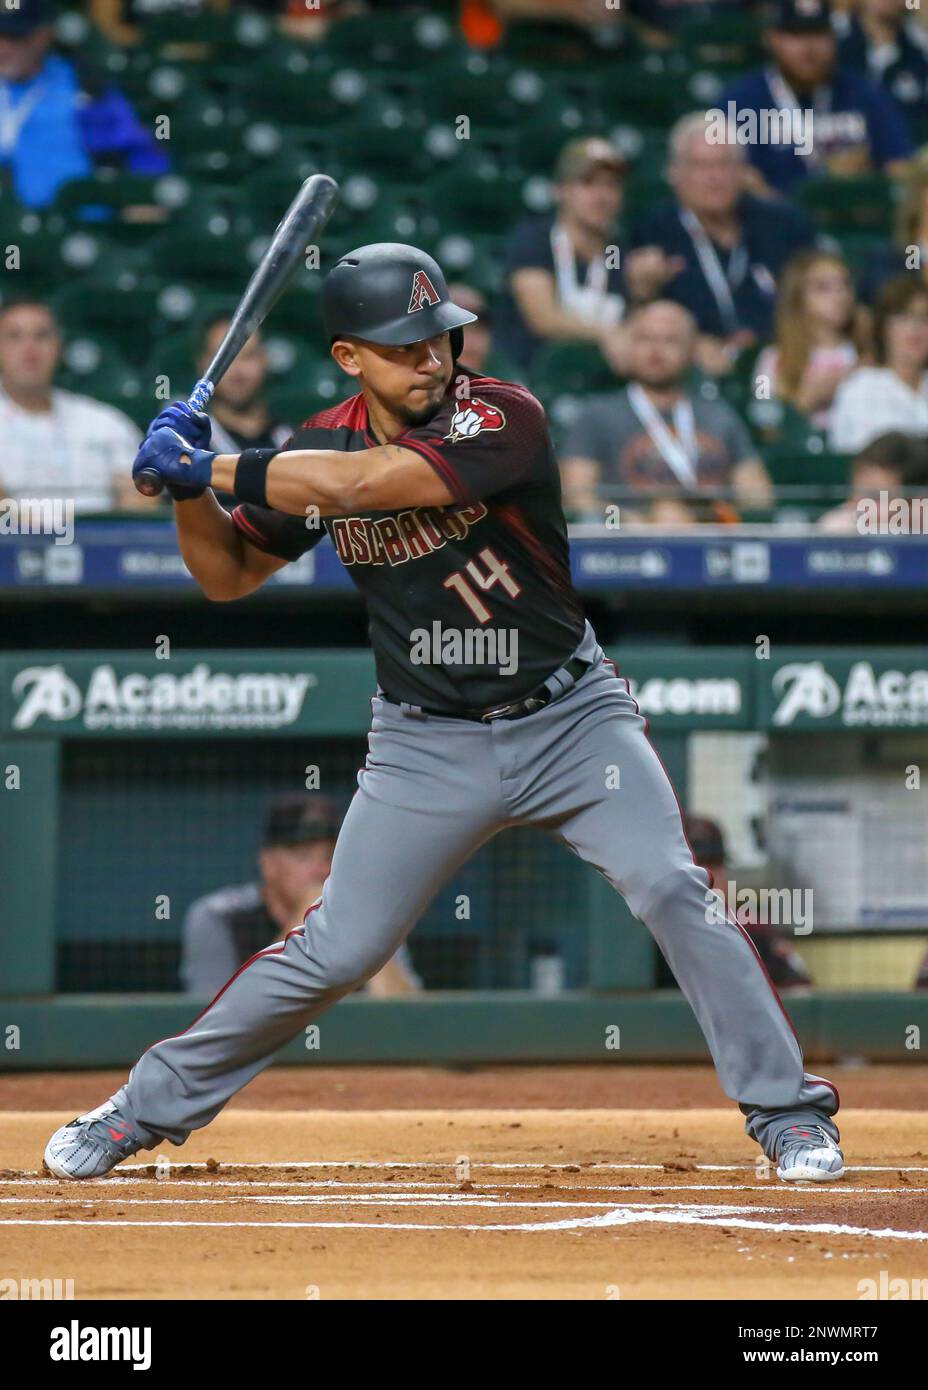 D-backs' Eduardo Escobar gets base hit in MLB All-Star Game